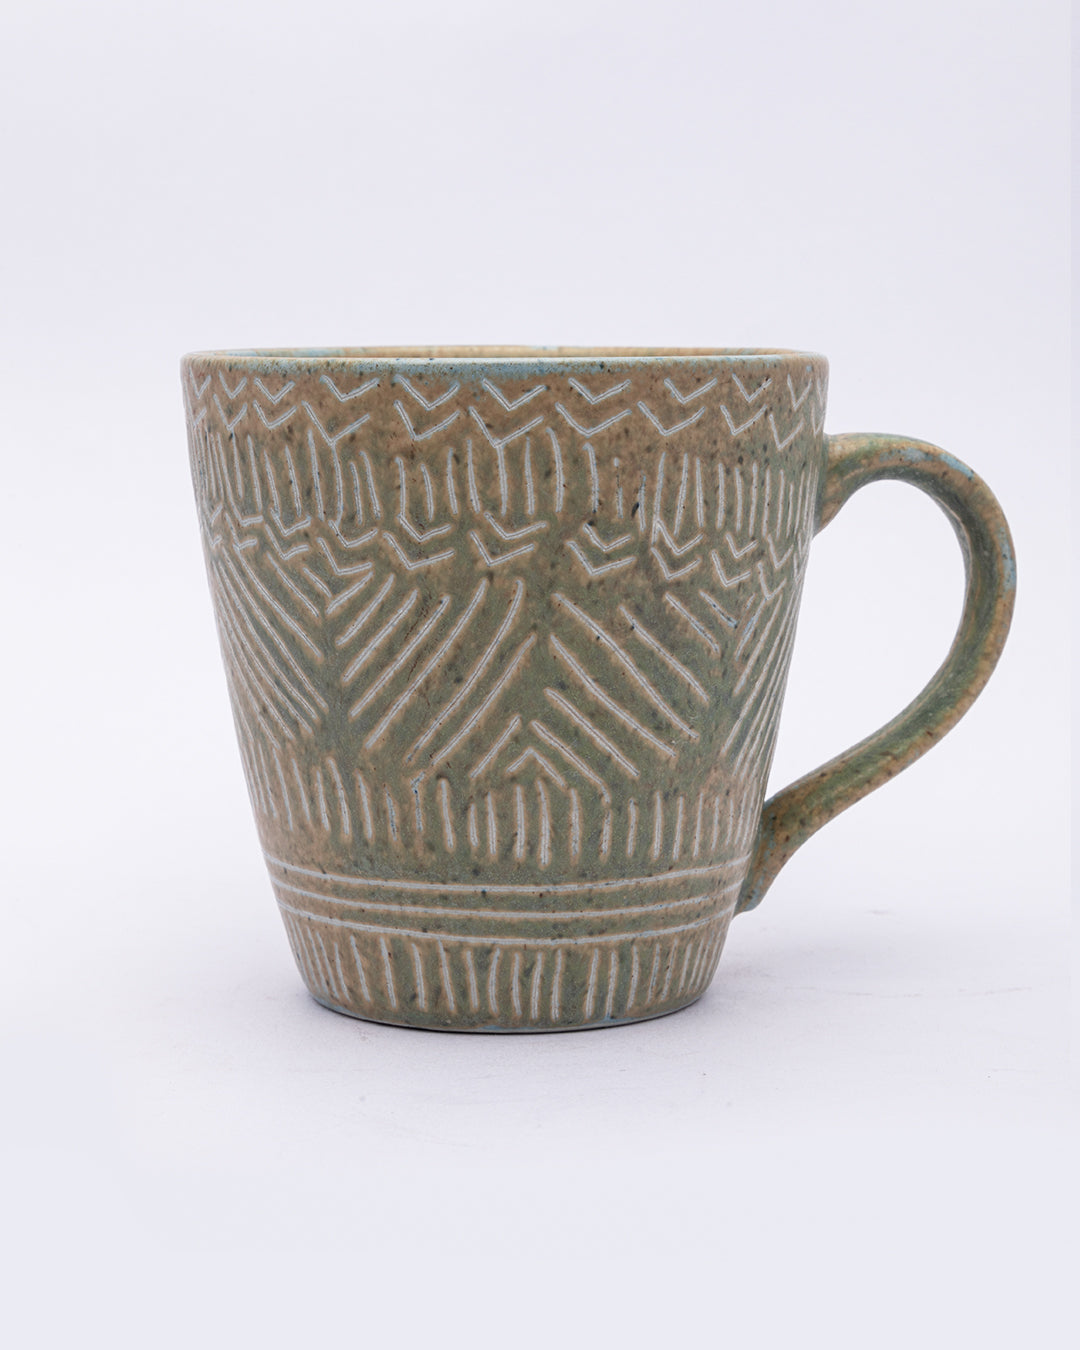 VON CASA Mug Set, Tea & Coffee Mug, Soup Mug, Stoneware, Antique Look, Green, Ceramic, Set of 2